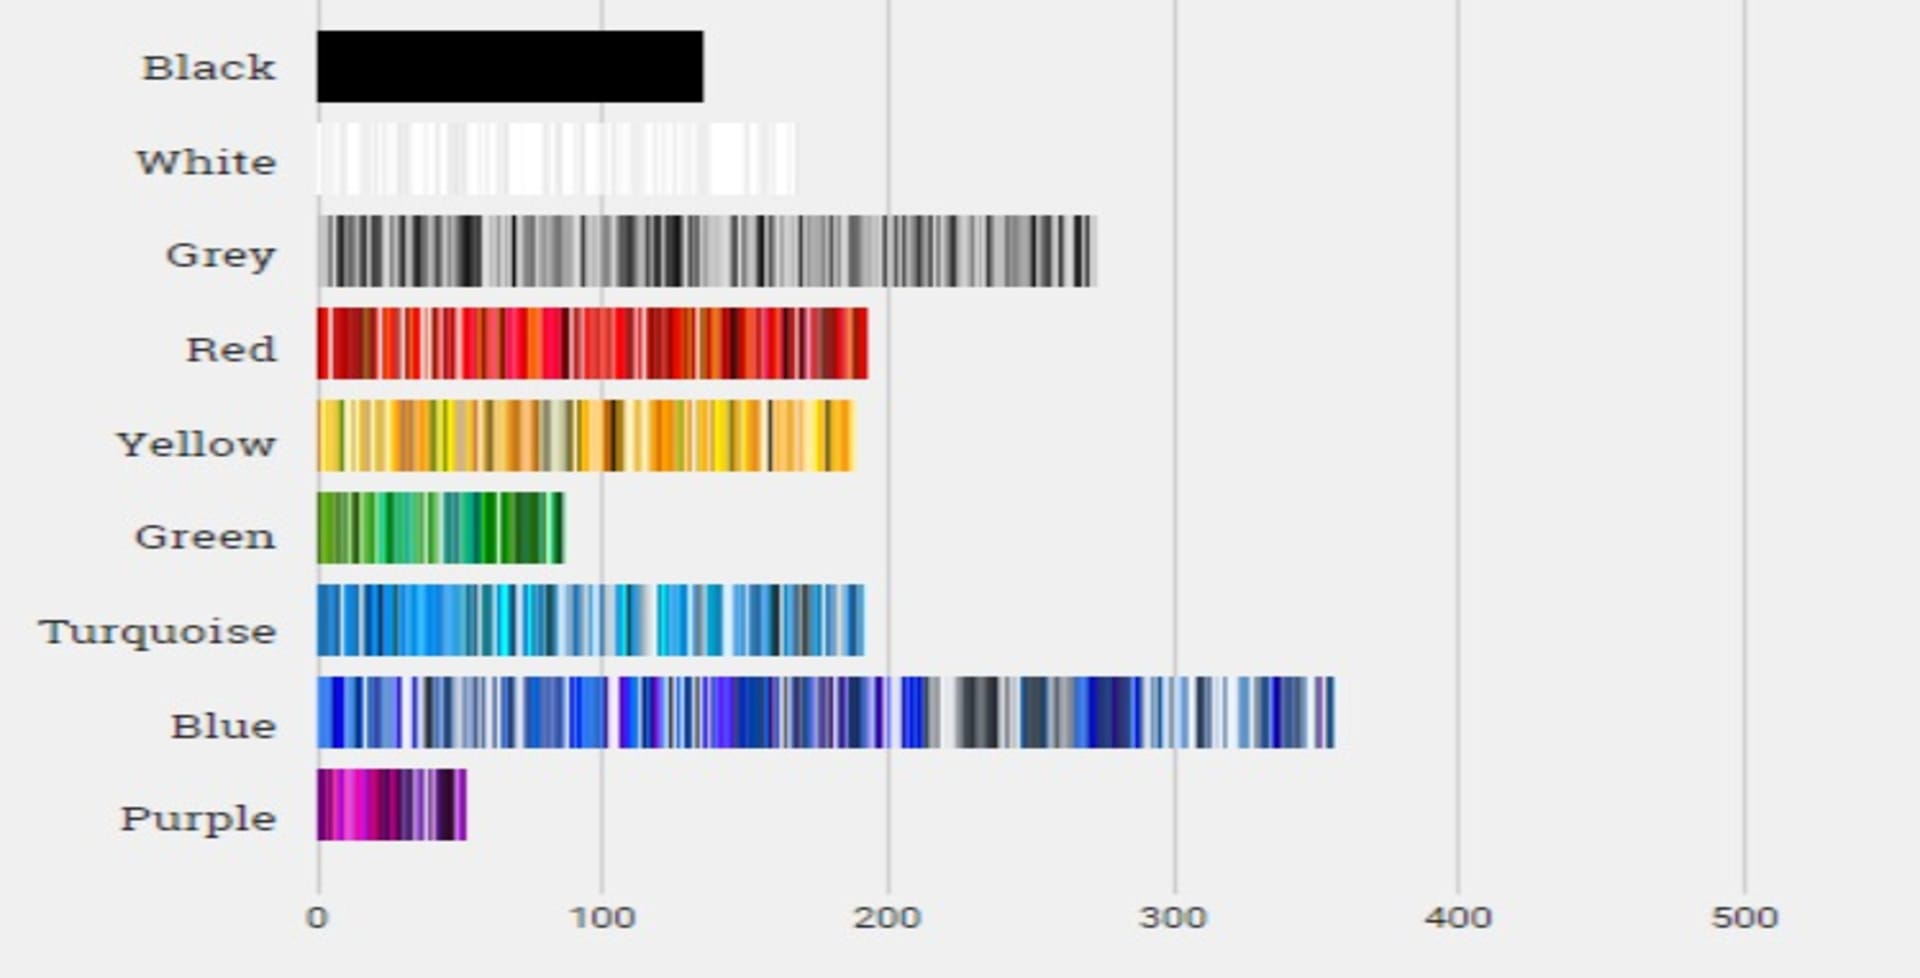 Srovnání četnosti barev na deseti nejnavštěvovanějších internetových stránkách